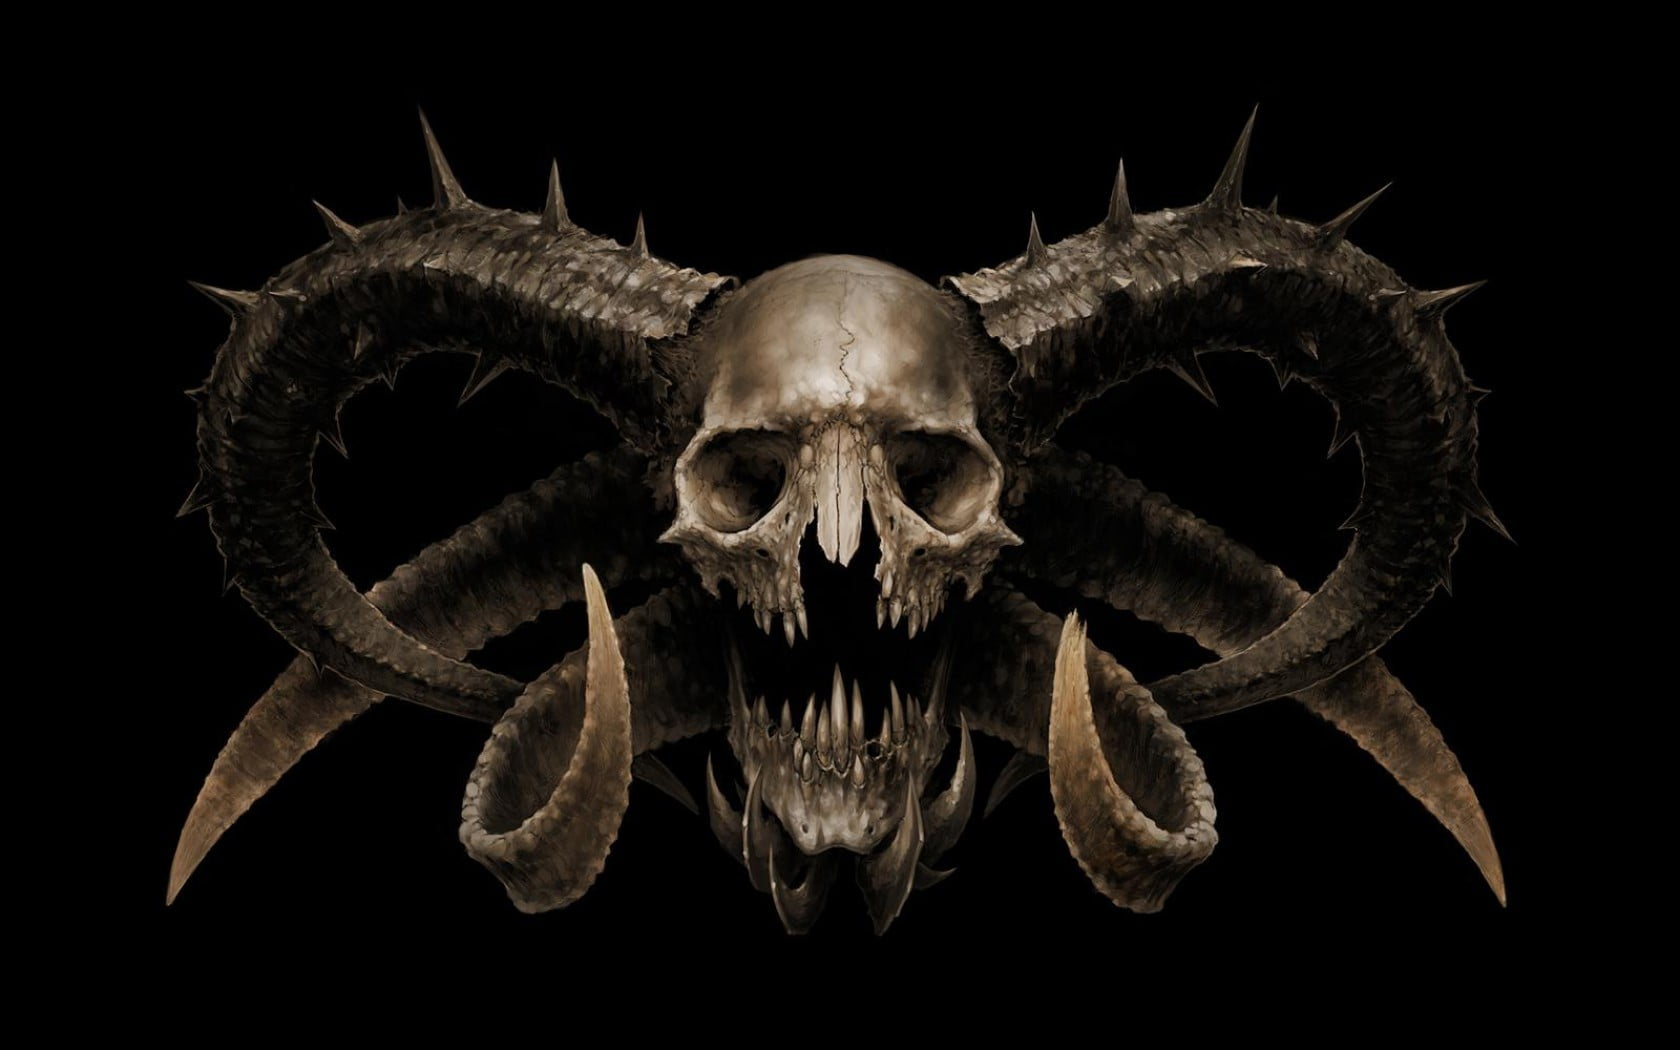 800x600 resolution | skull illustration, digital art, creature, skull ...